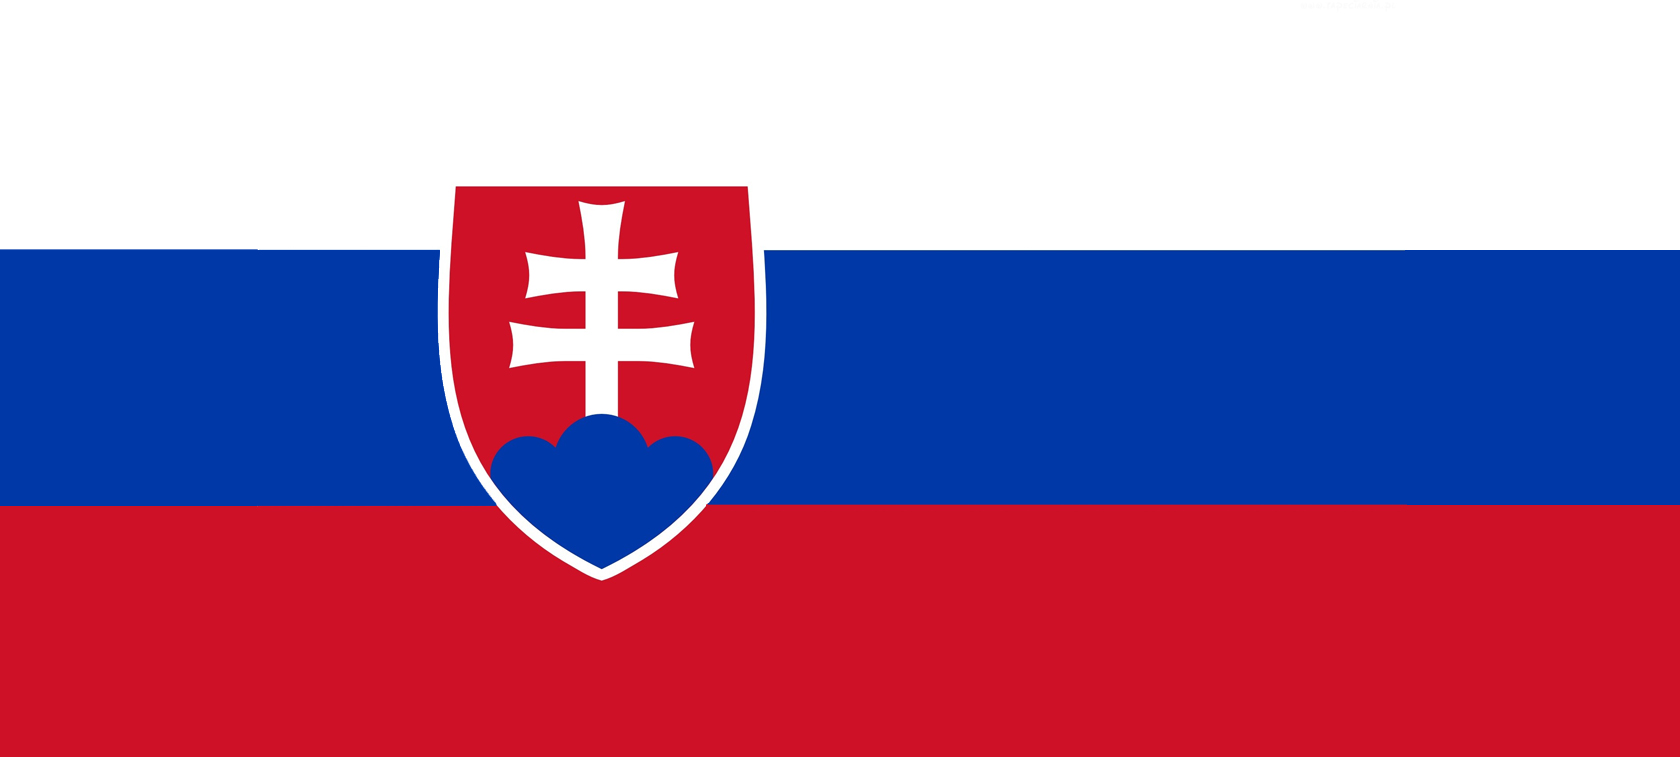 Słowacja wspiera paliwa alternatywne